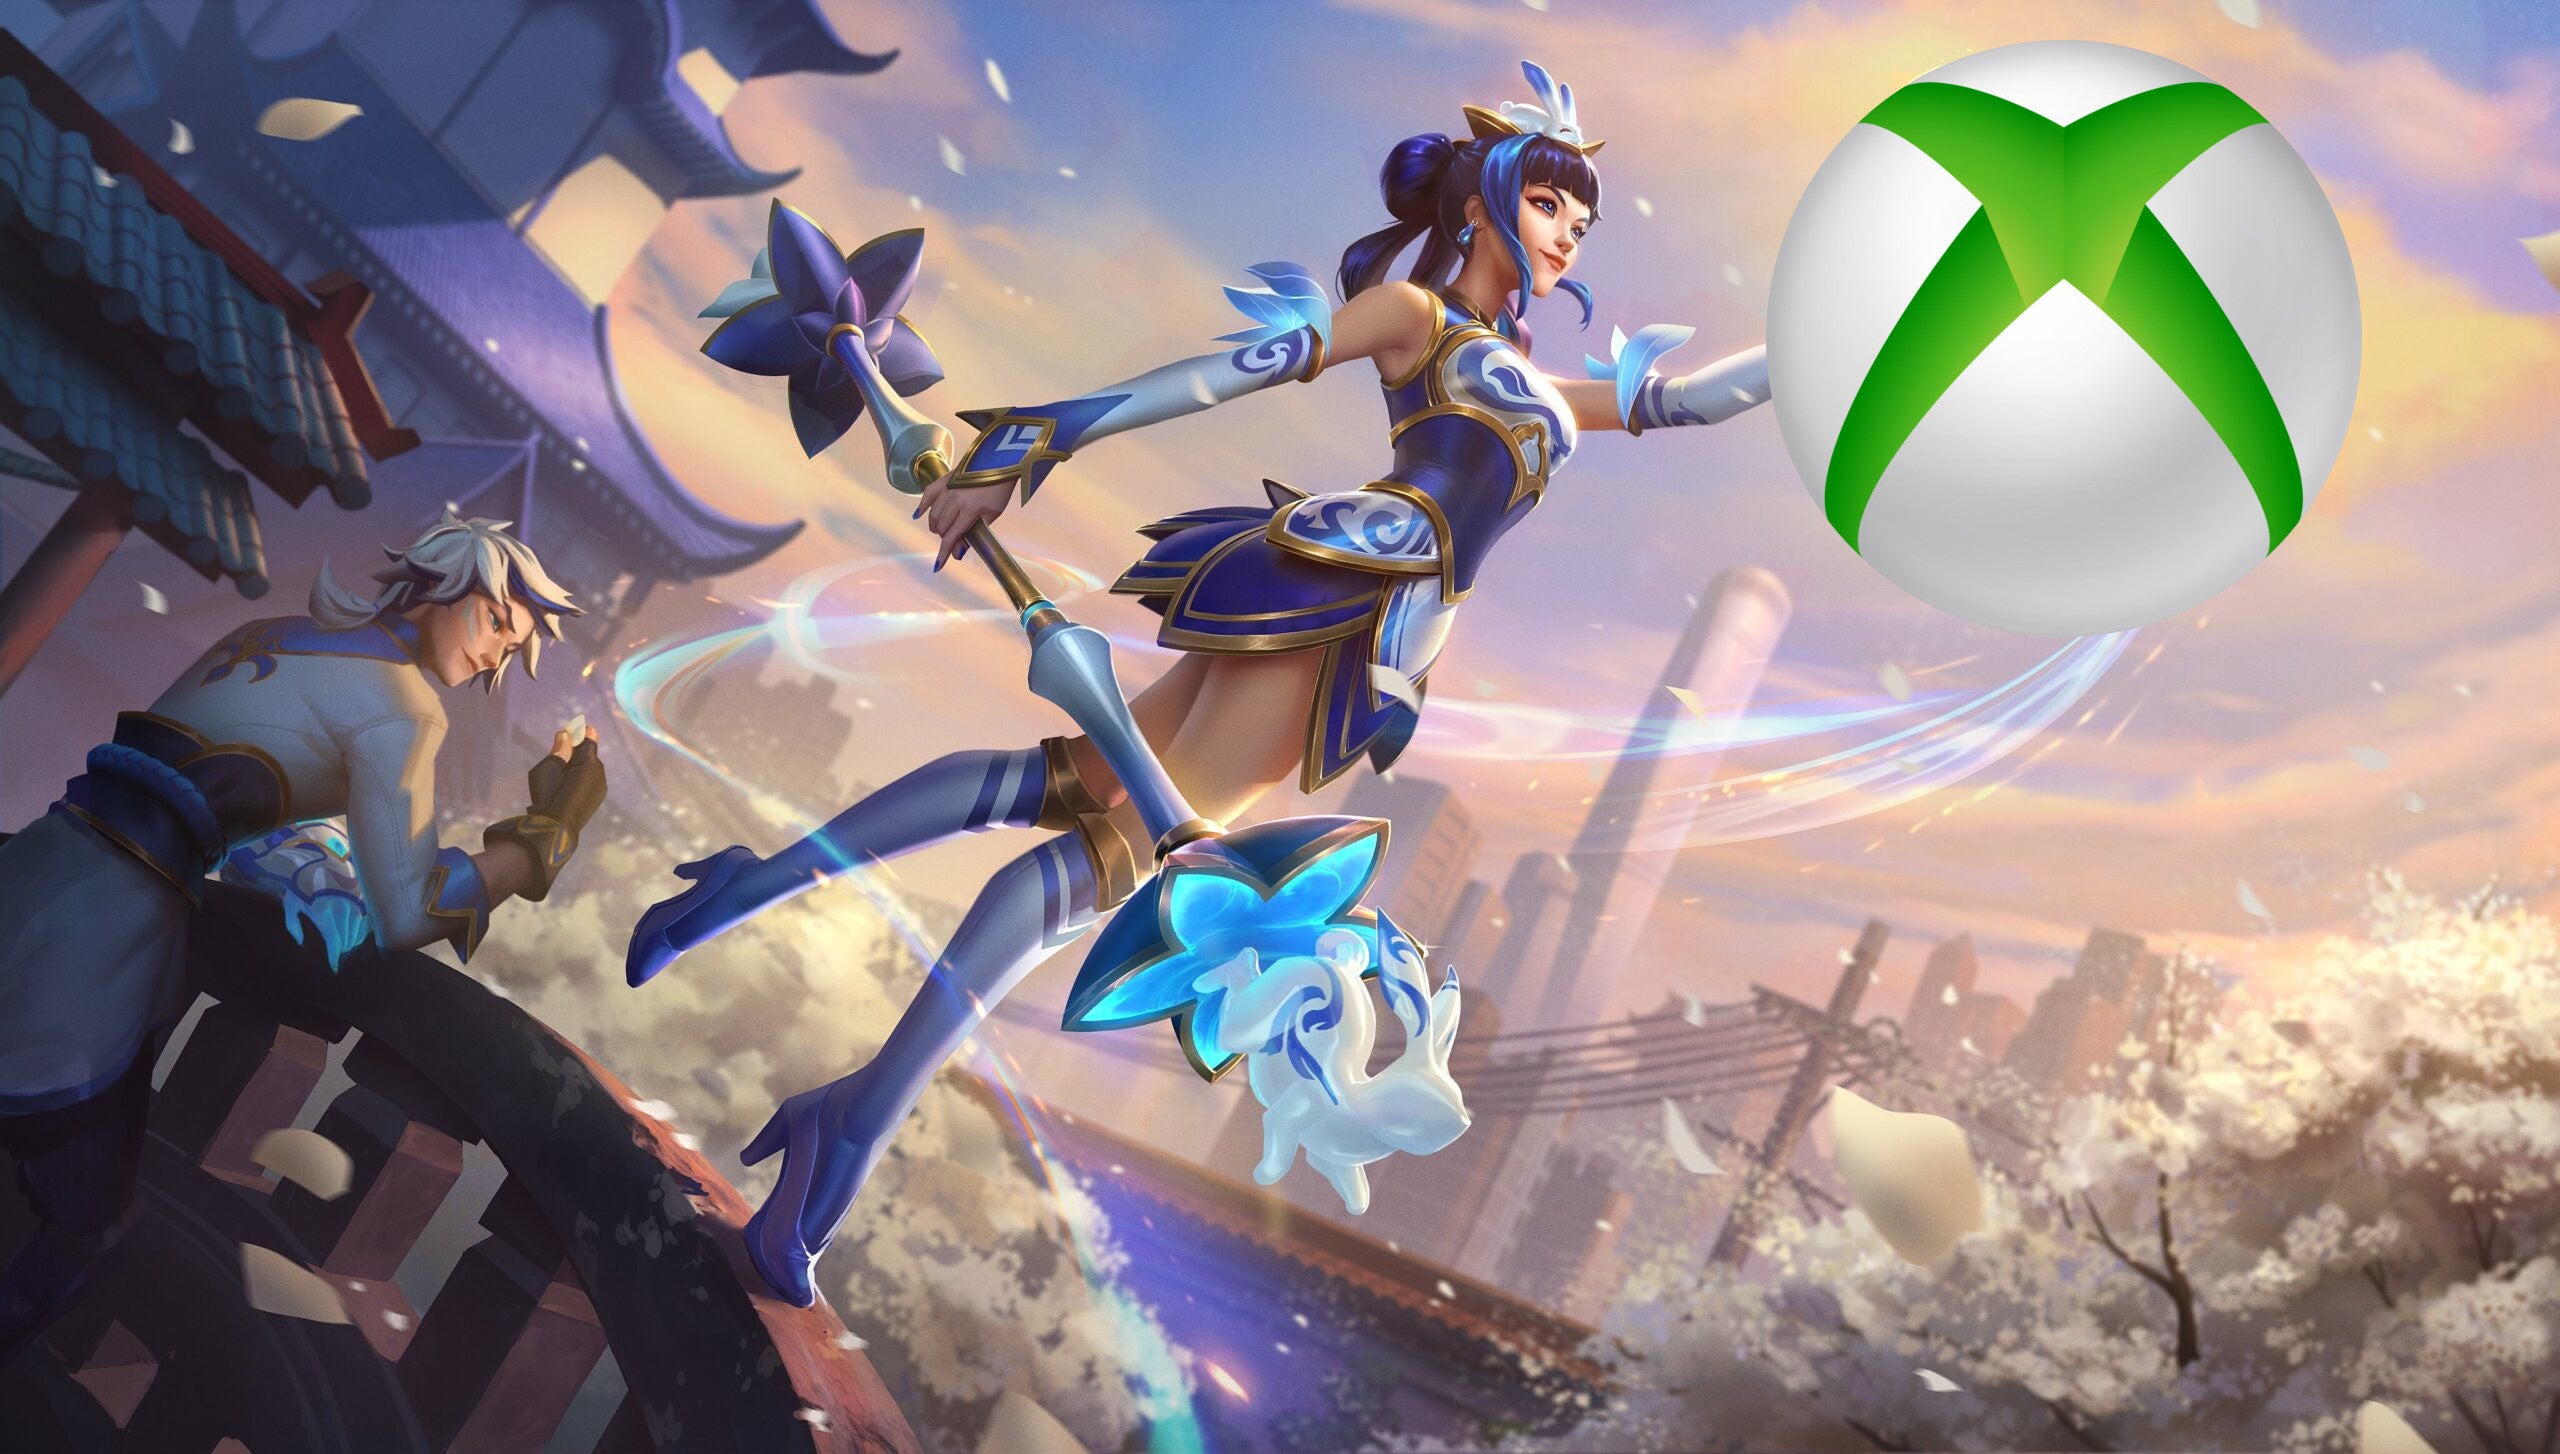 Bilder zu League of Legends im Game Pass: Verändert Xbox die Dynamik von F2P-Spielen?